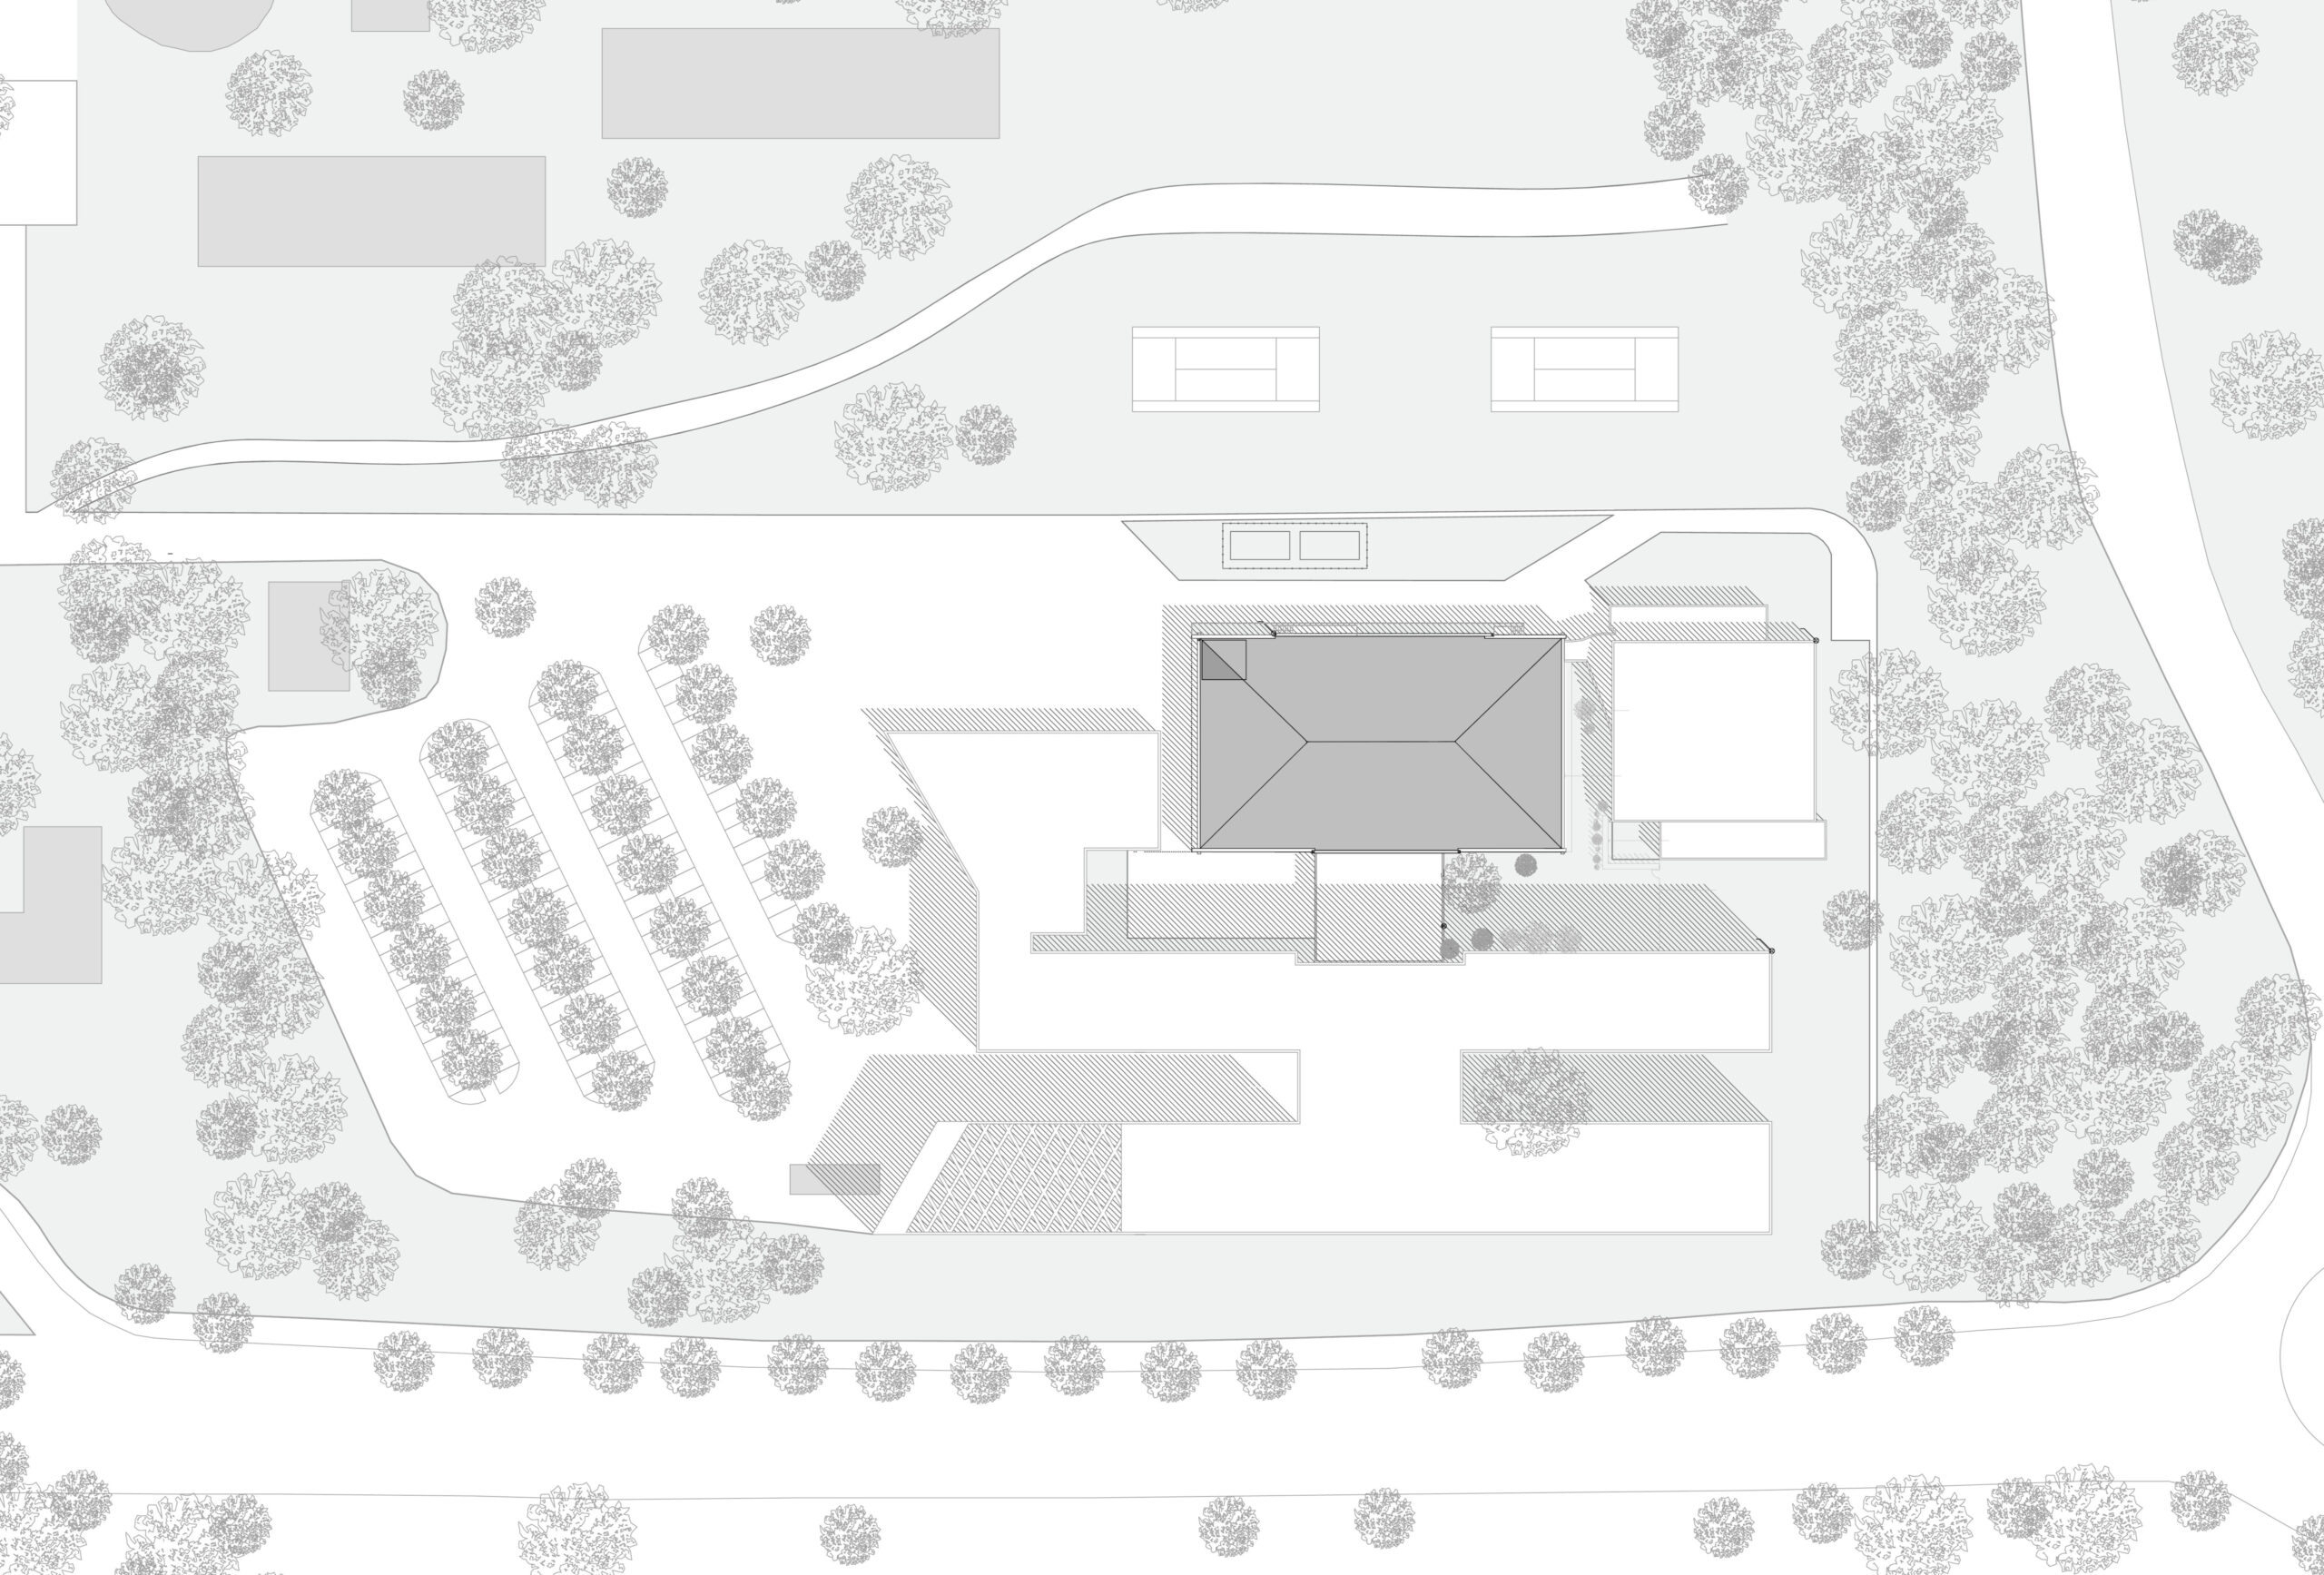 Plan de masse - Salle de convivialité - Auzeville